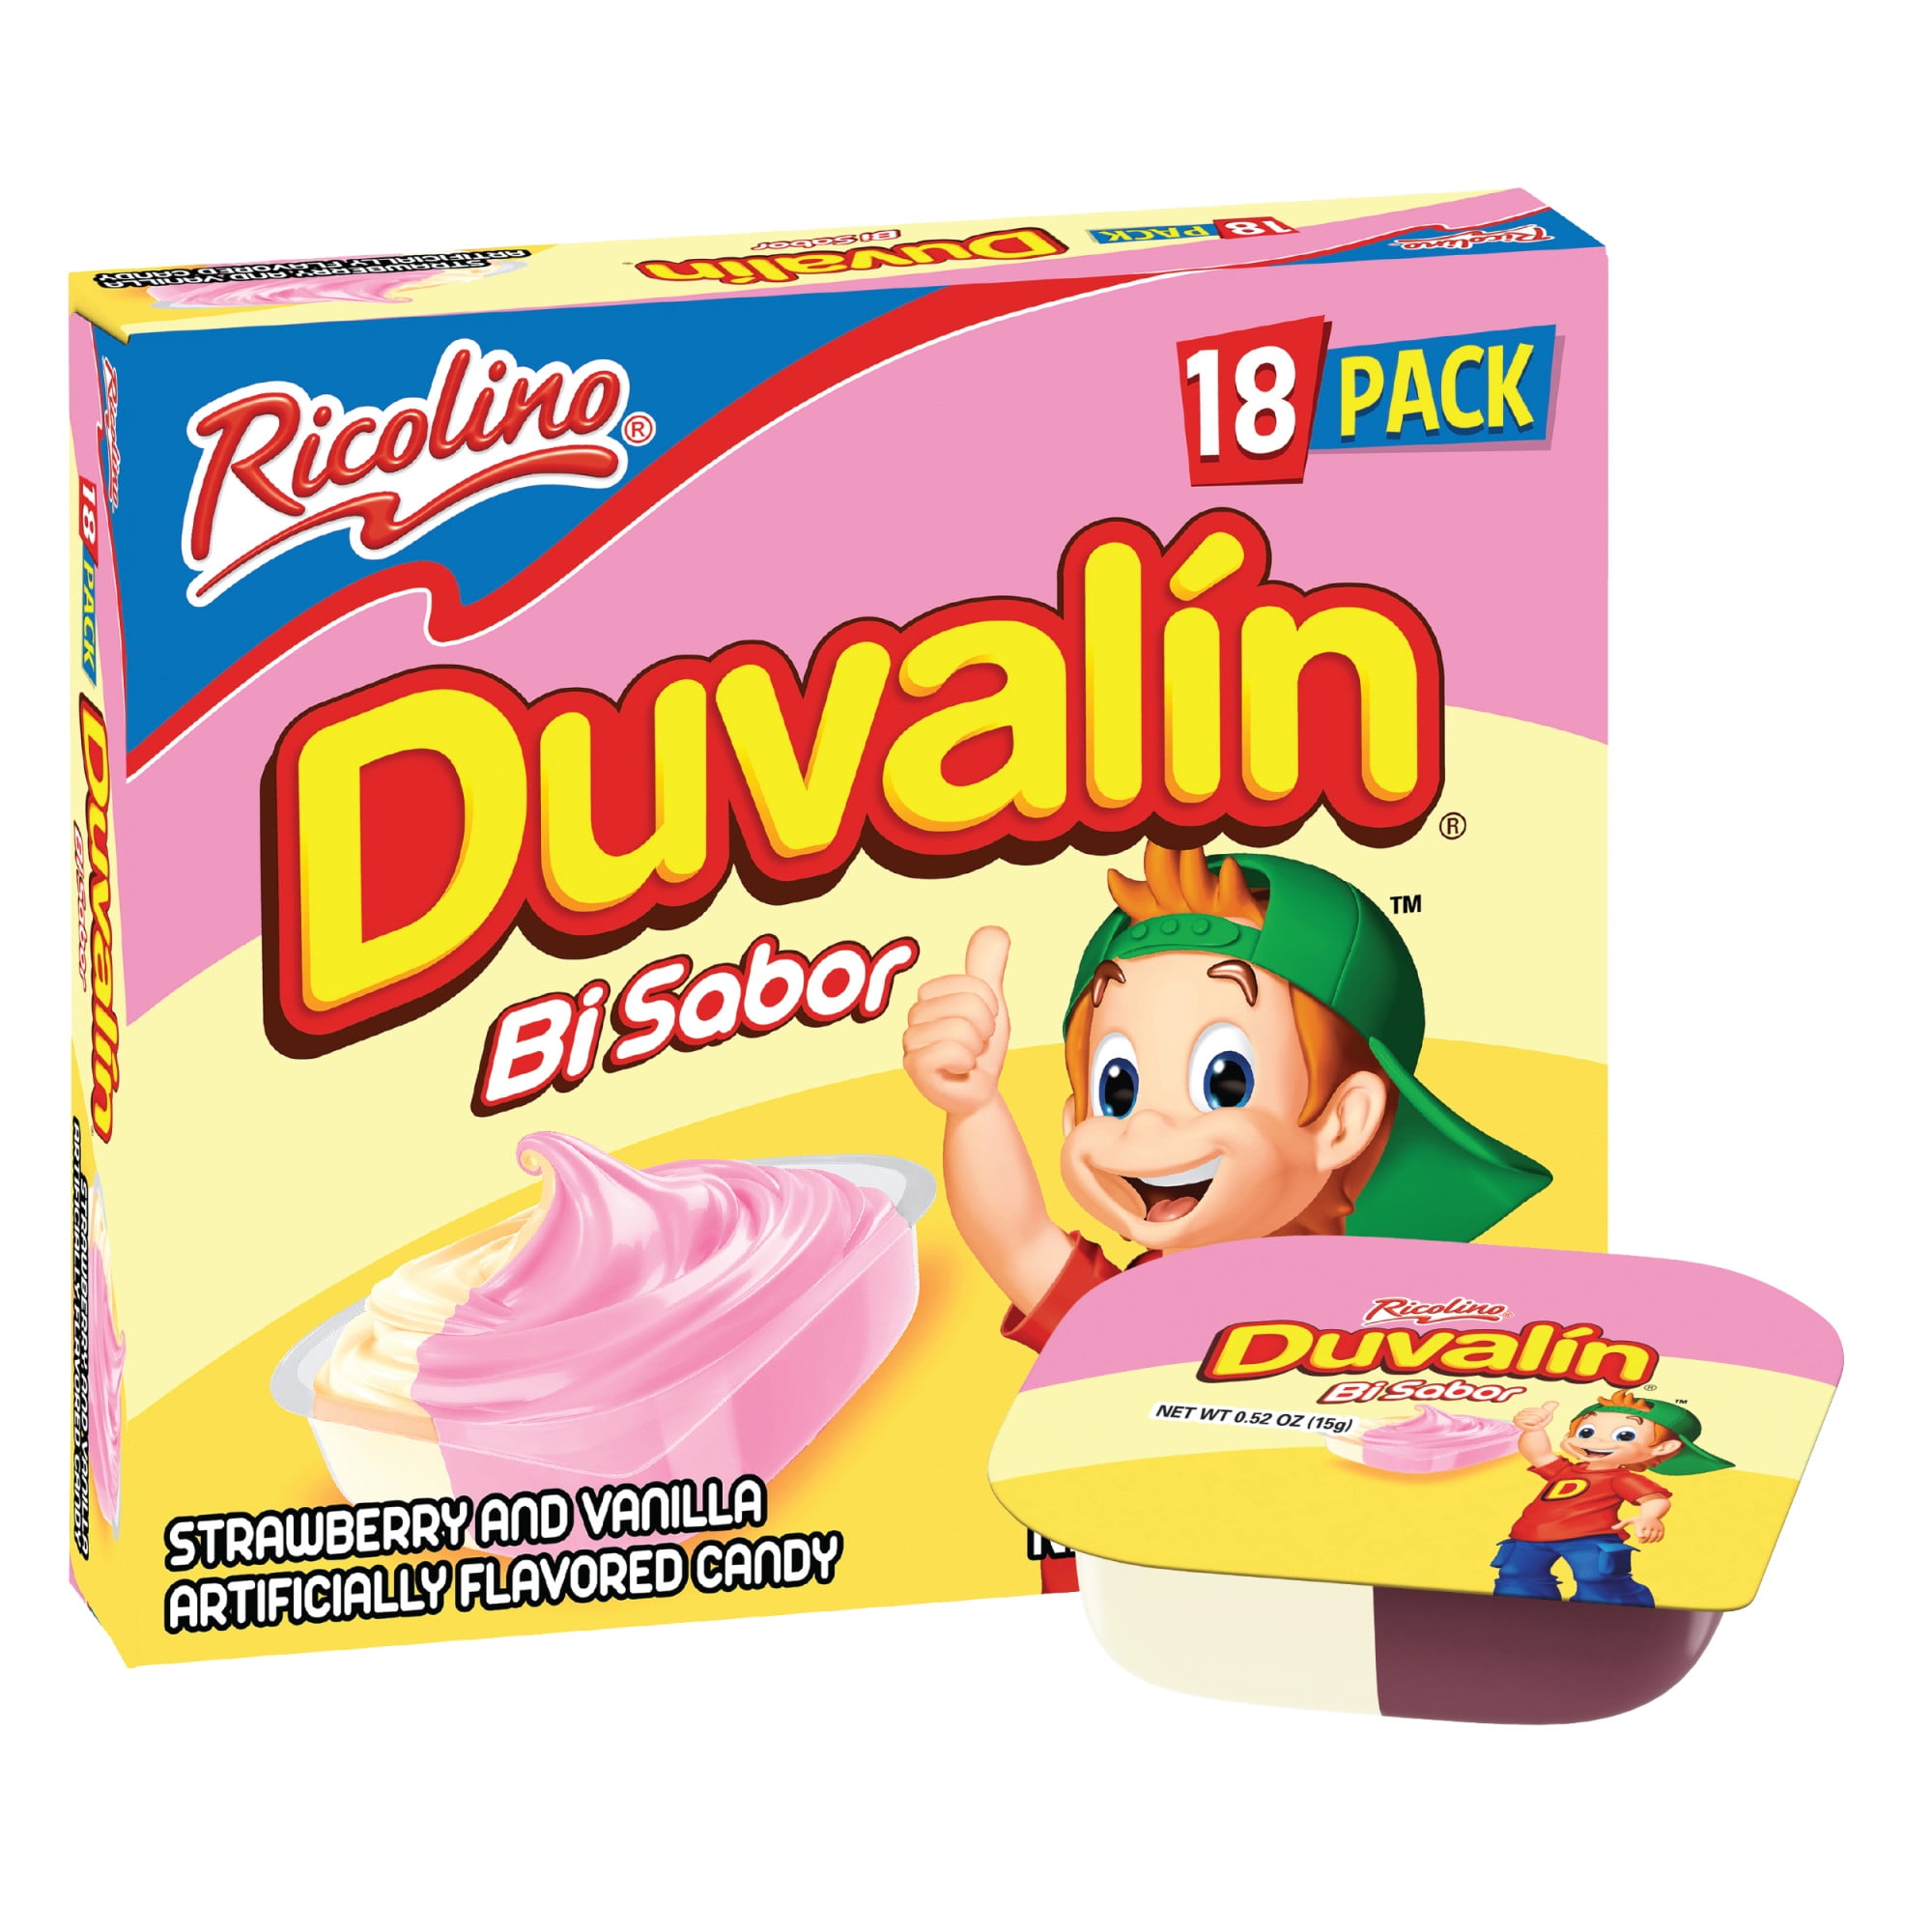 Ricolino Duvalin Strawberry And Vanilla Artificially Flavored Candy ...